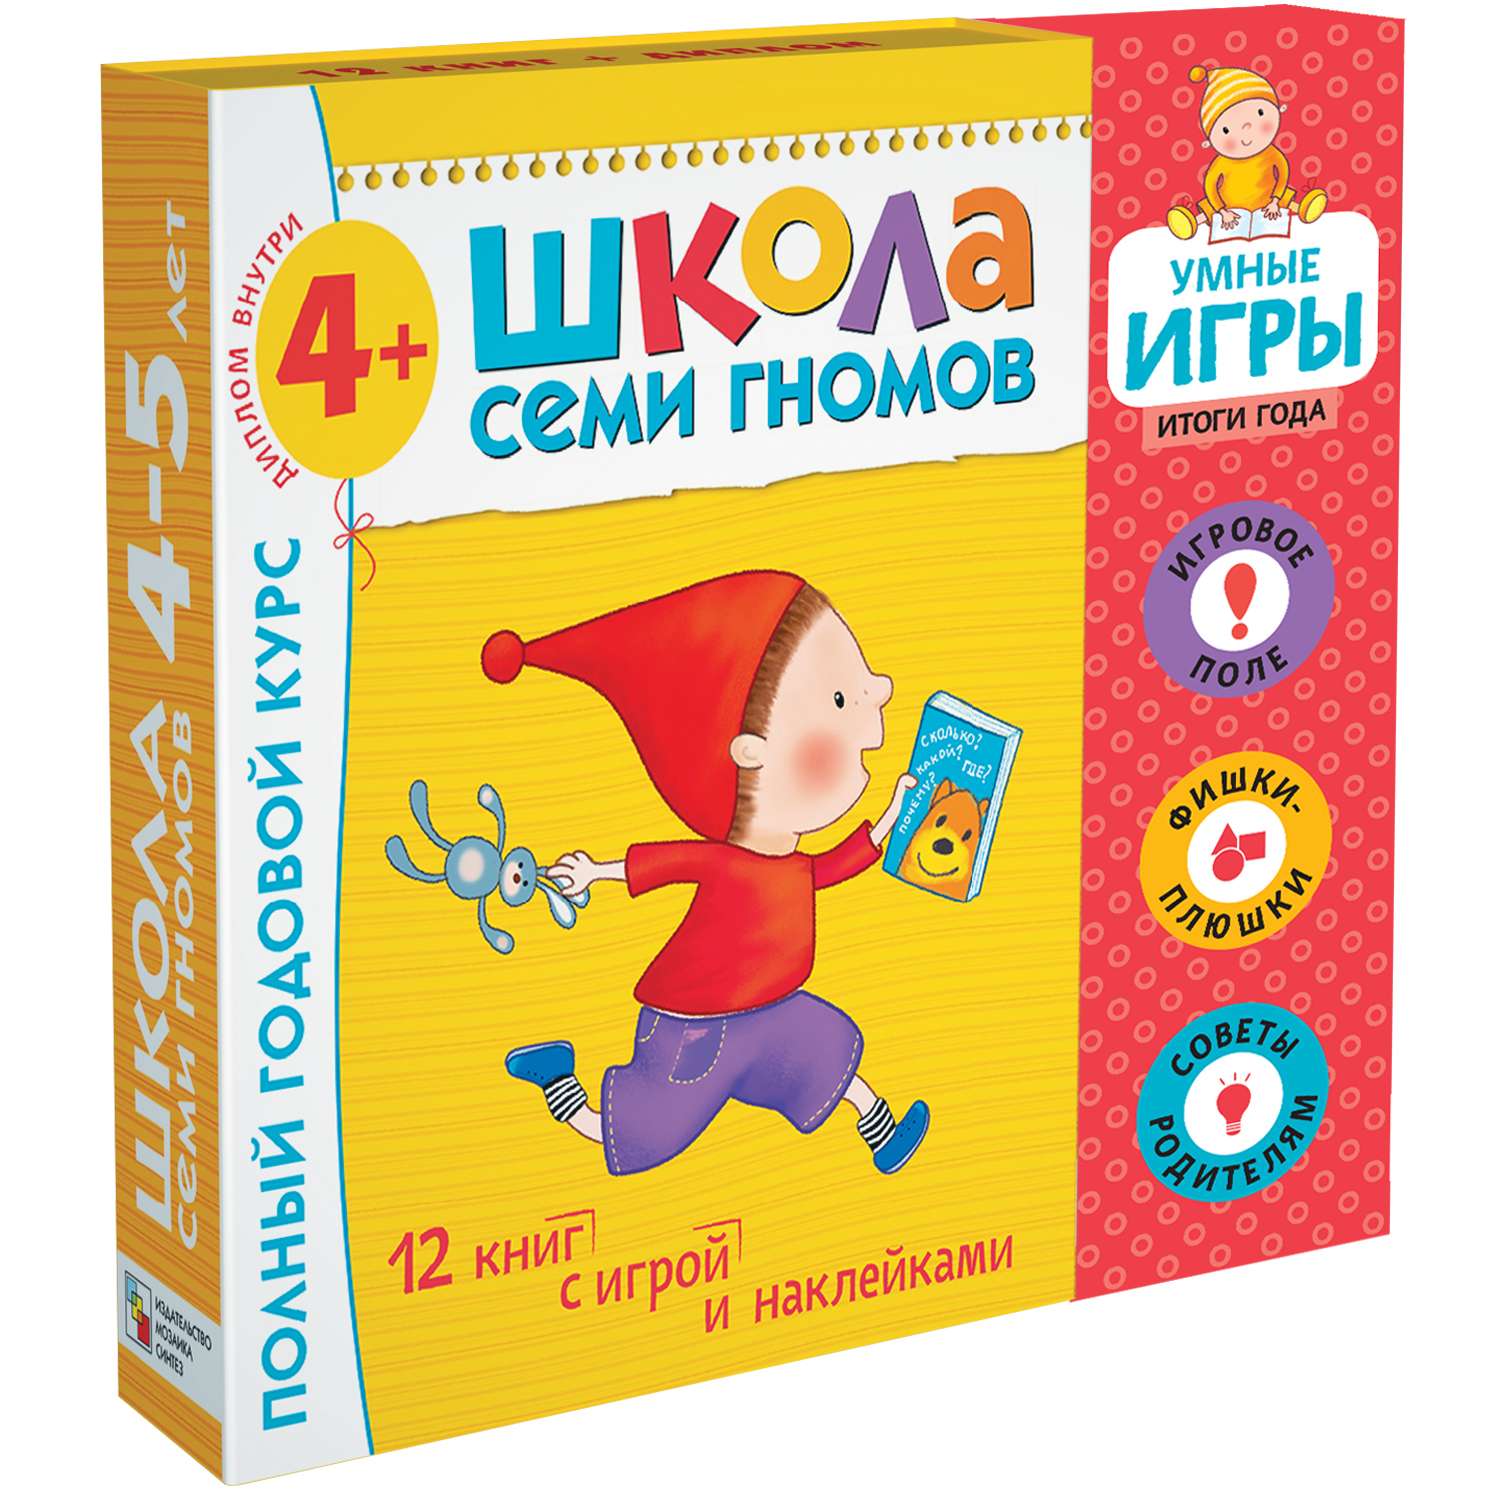 Набор книг МОЗАИКА kids Школа Семи Гномов Расширенный комплект 5год обучения с игрой - фото 1